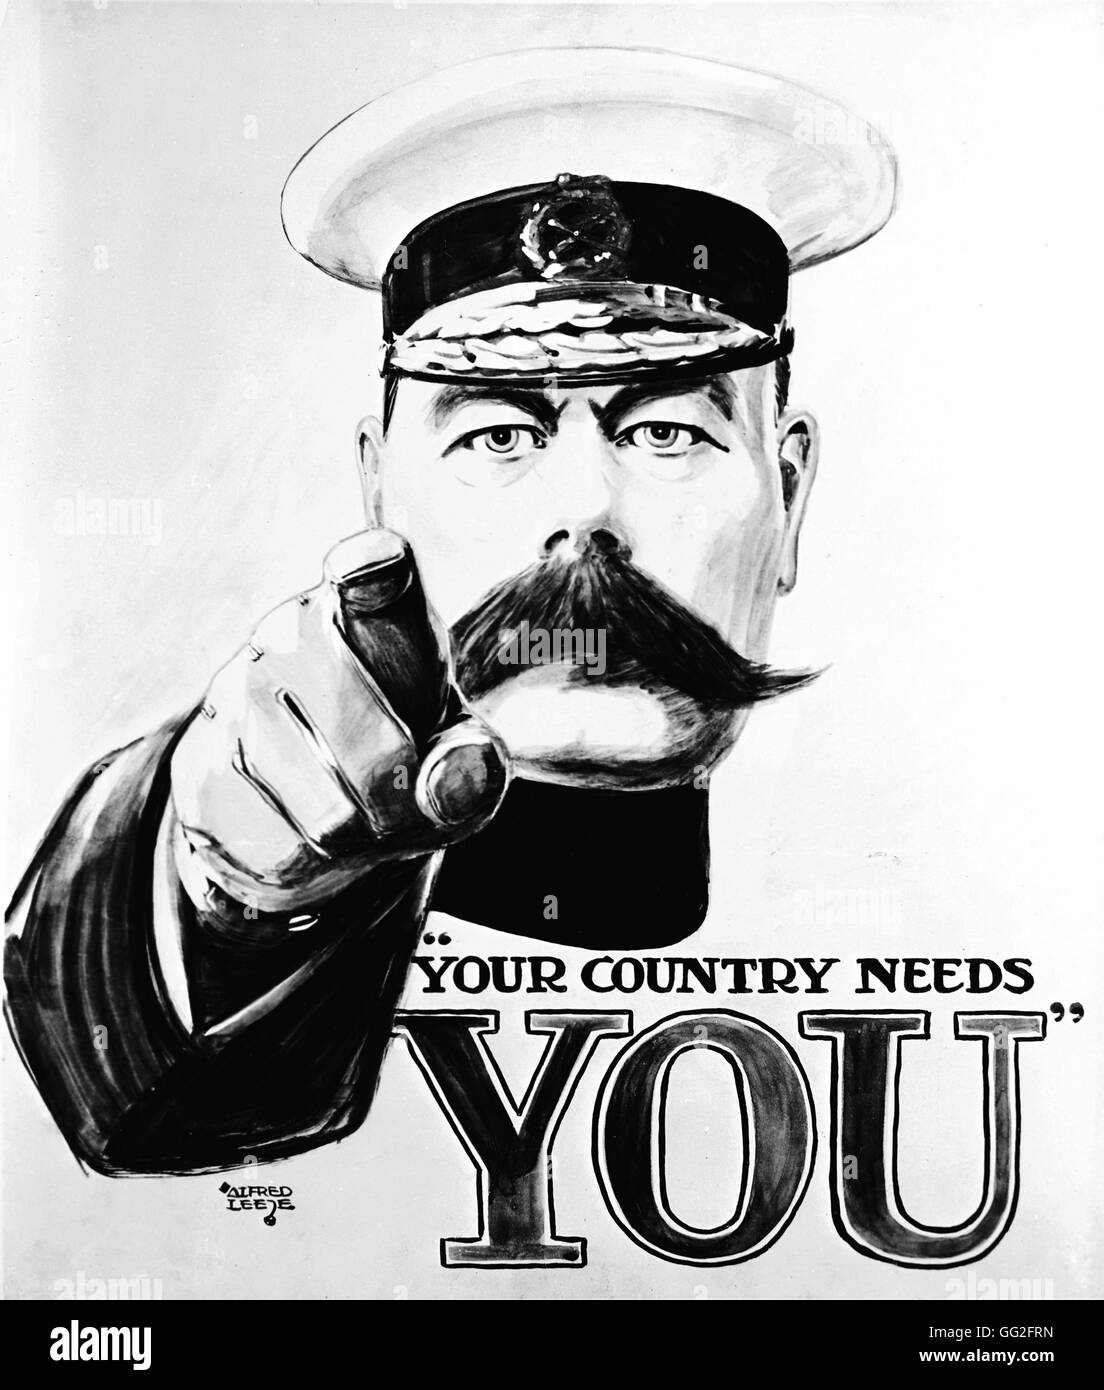 Première Guerre mondiale. Affiche de recrutement, Lord Kitchener demande des citoyens britanniques à 'Joindre'. 1914. Dessin de Alfred Leete. Imperial War Museum. Banque D'Images